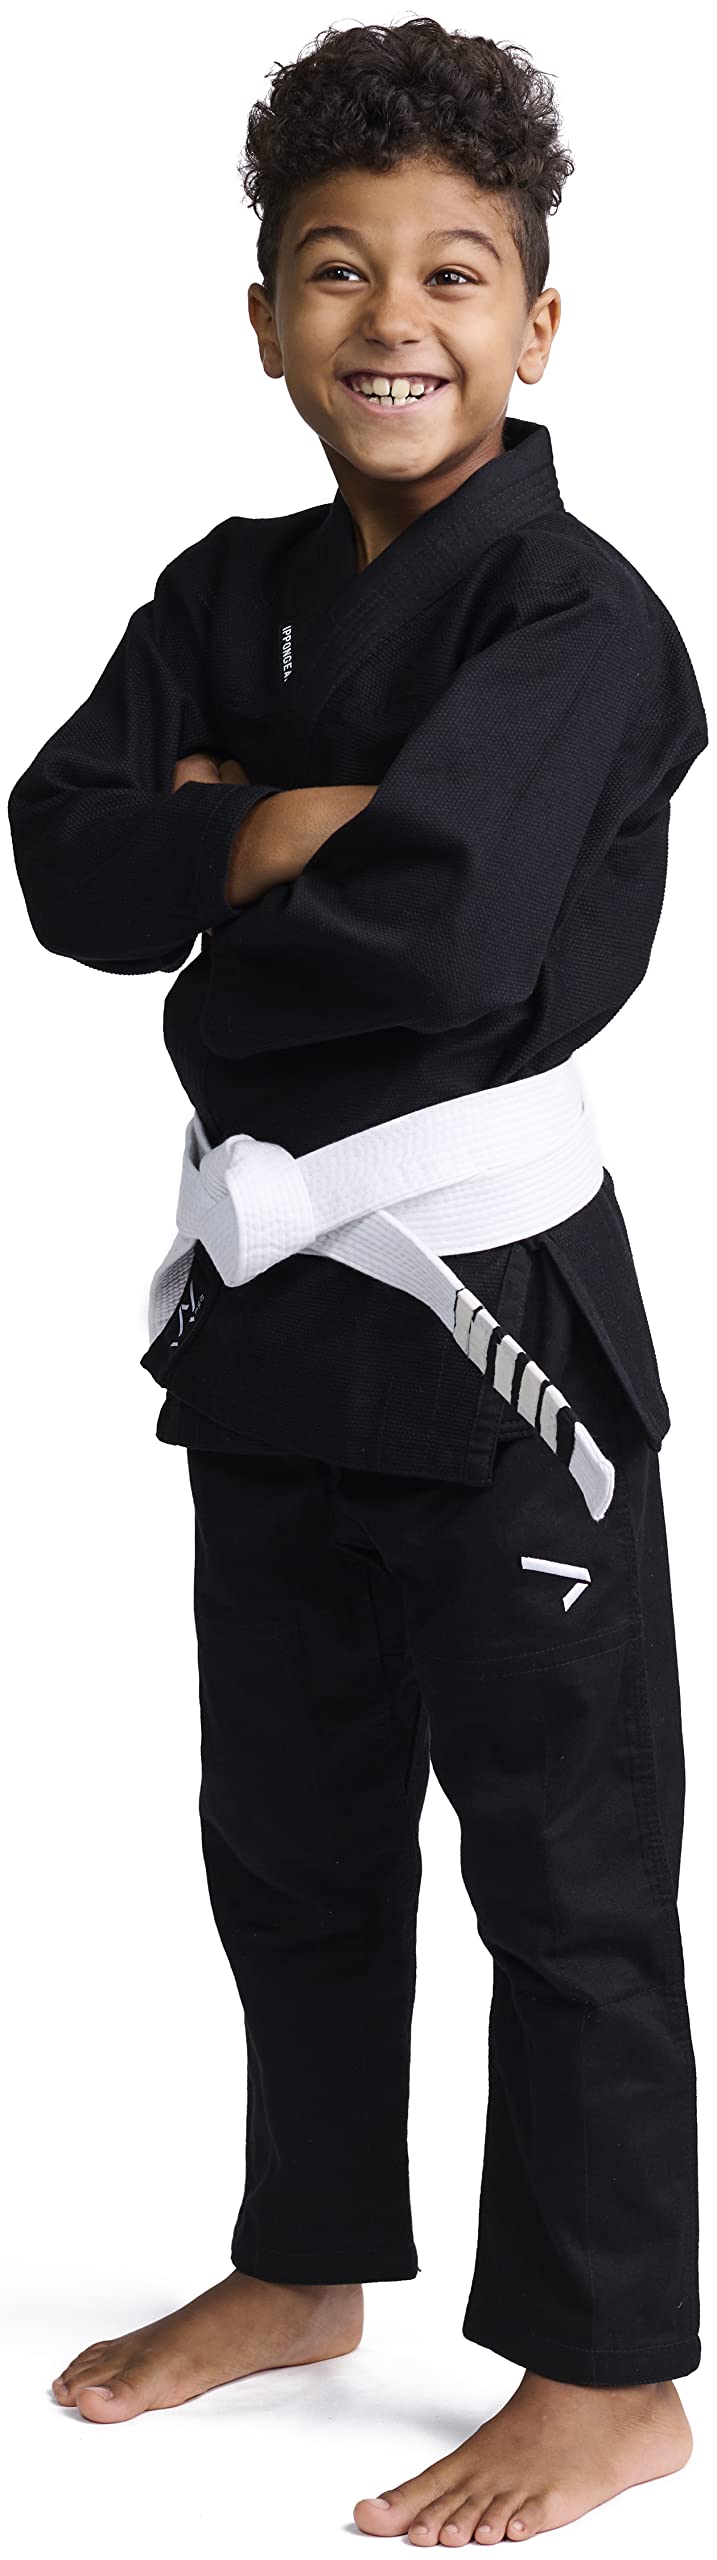 IPPONGEAR Brazilian Jiu Jitsu Kinder/Einsteiger Anzug inkl weißem Gürtel [M00 I Pearl-Weave Material I 350gr/m² Stoffdichte I Reißfest] schwarz